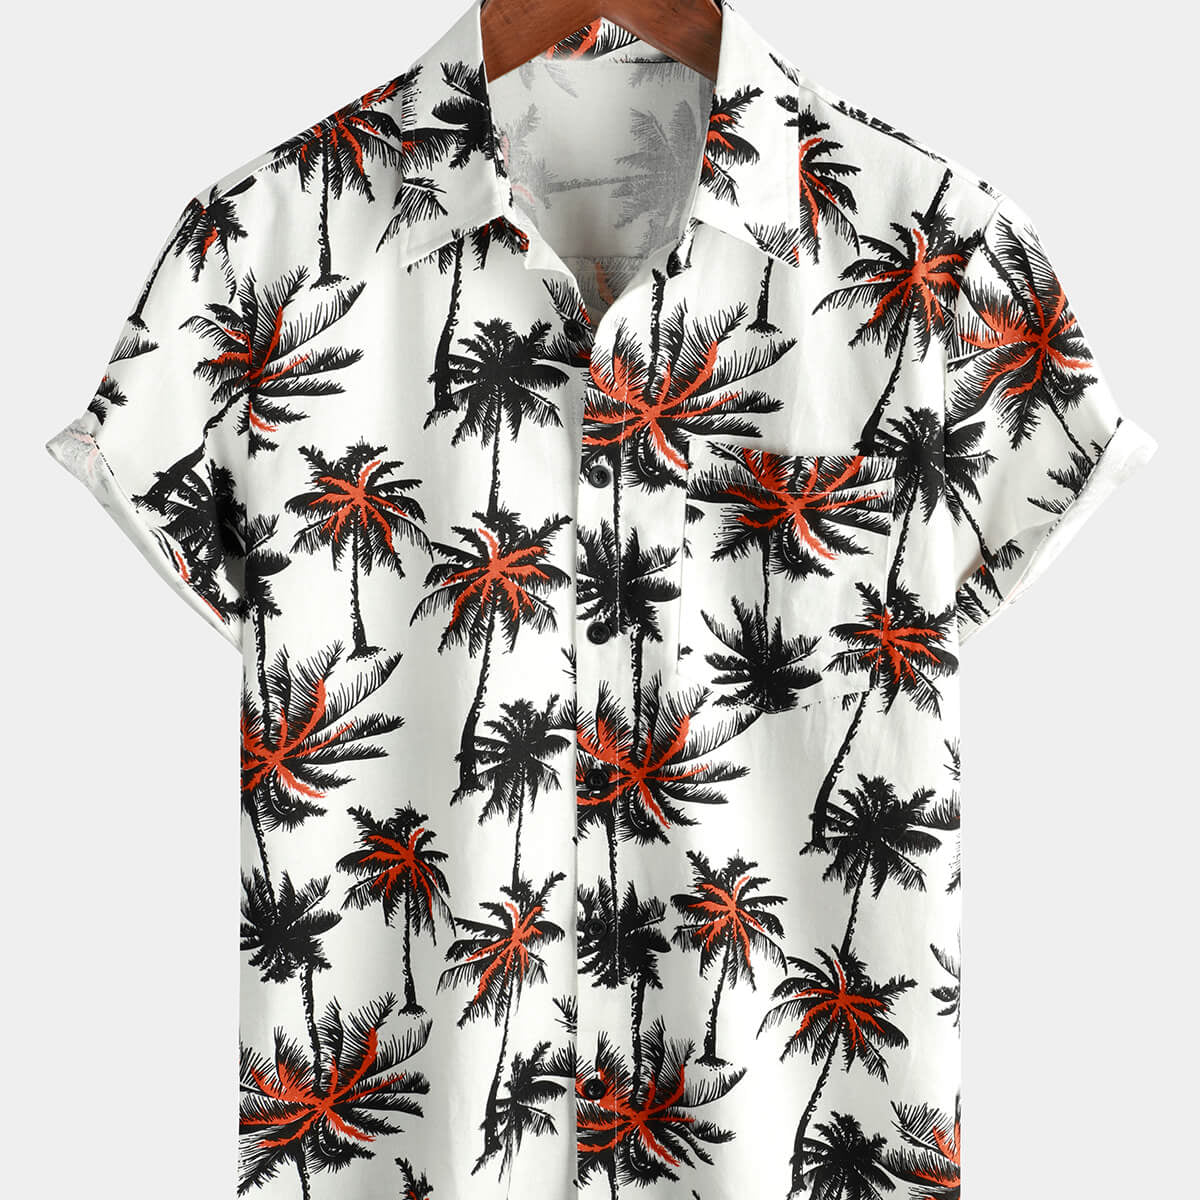 Chemise boutonnée à manches courtes en coton et lin imprimé noix de coco tropicale pour hommes